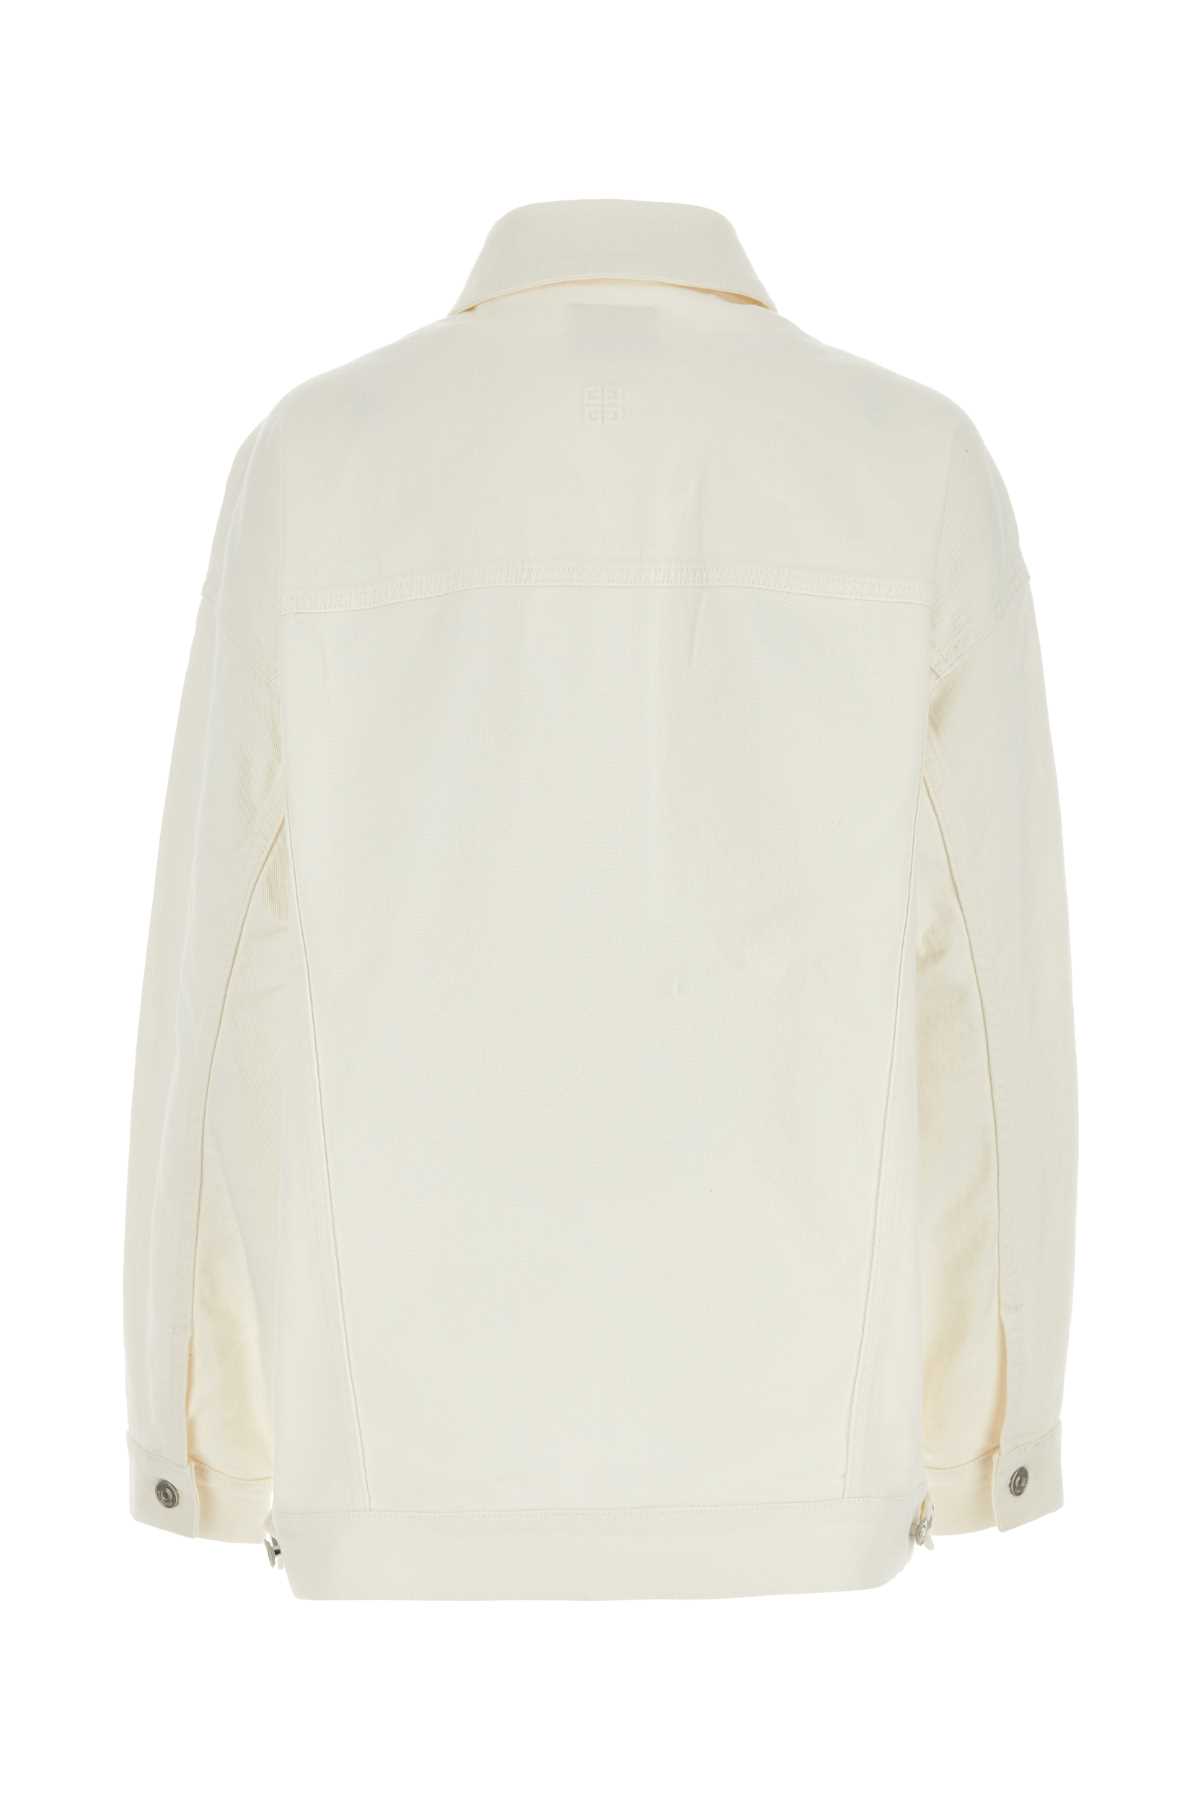 Shop Givenchy White Denim Oversize Jacket